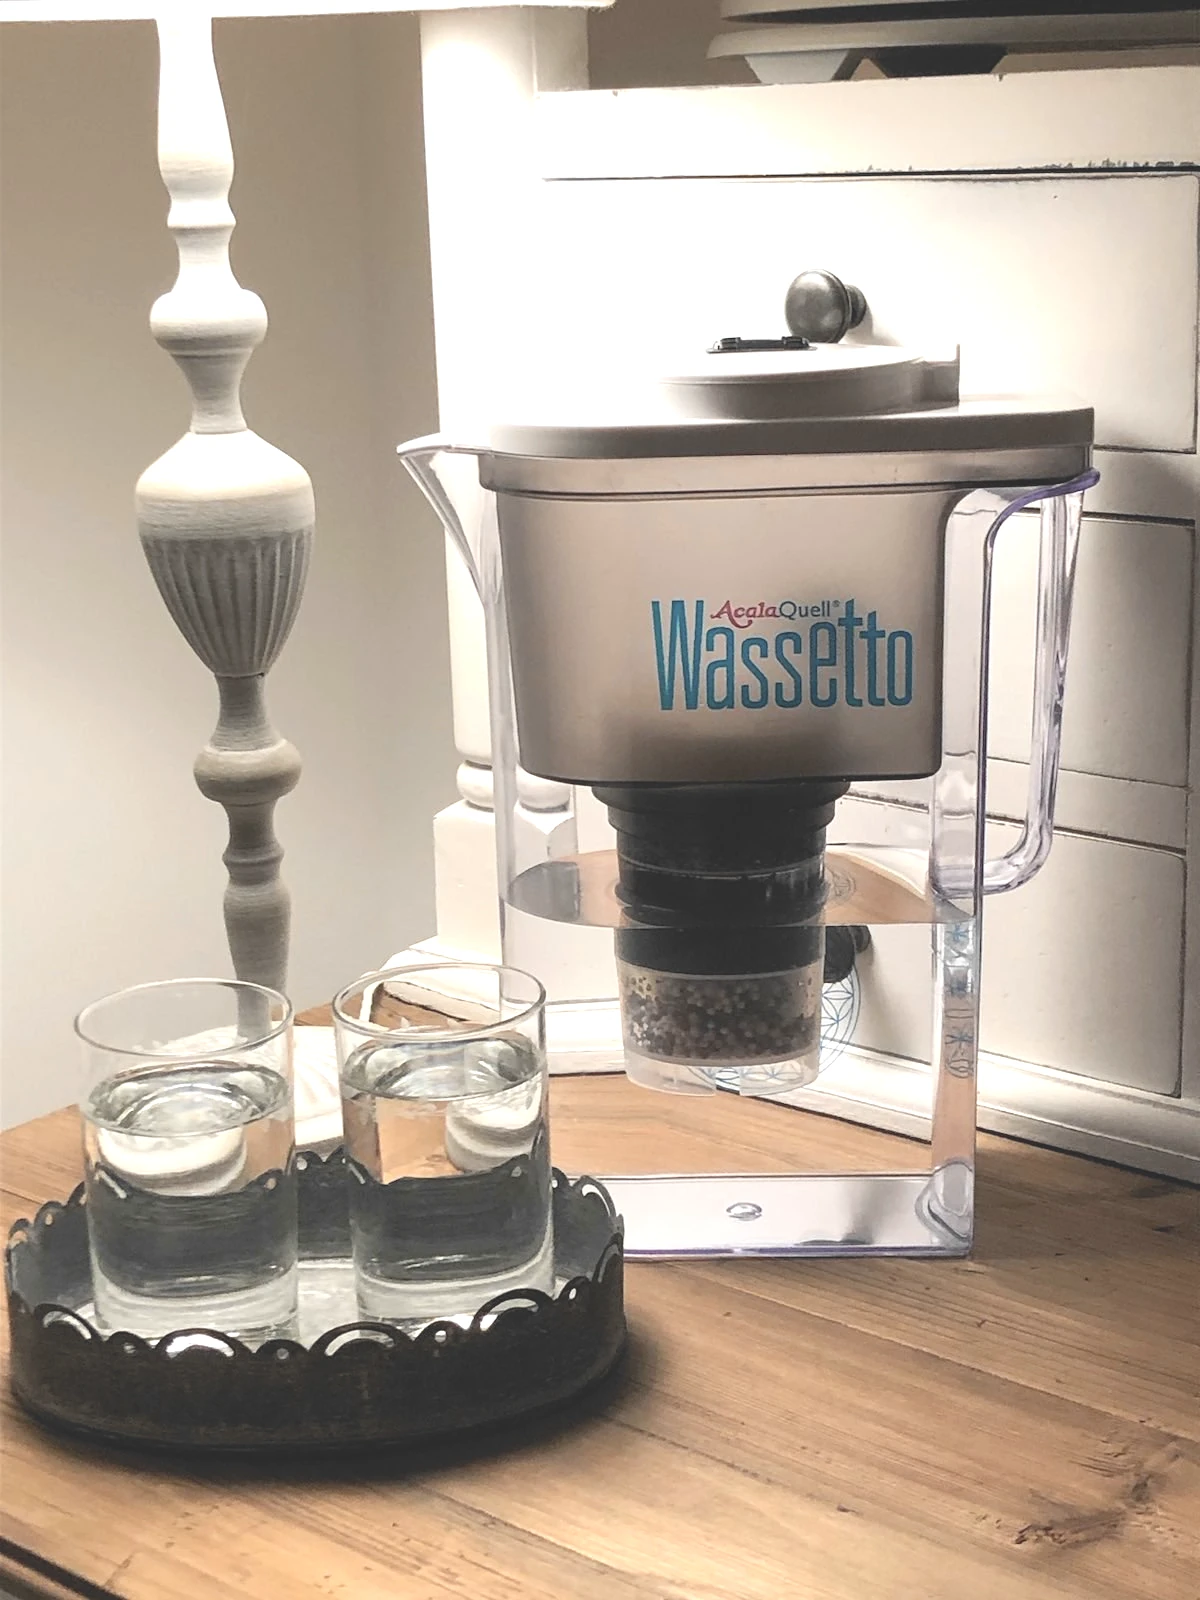 Wassetto steht auf einer holzplatte neben einer Tischlampe und einem Glas mit waser